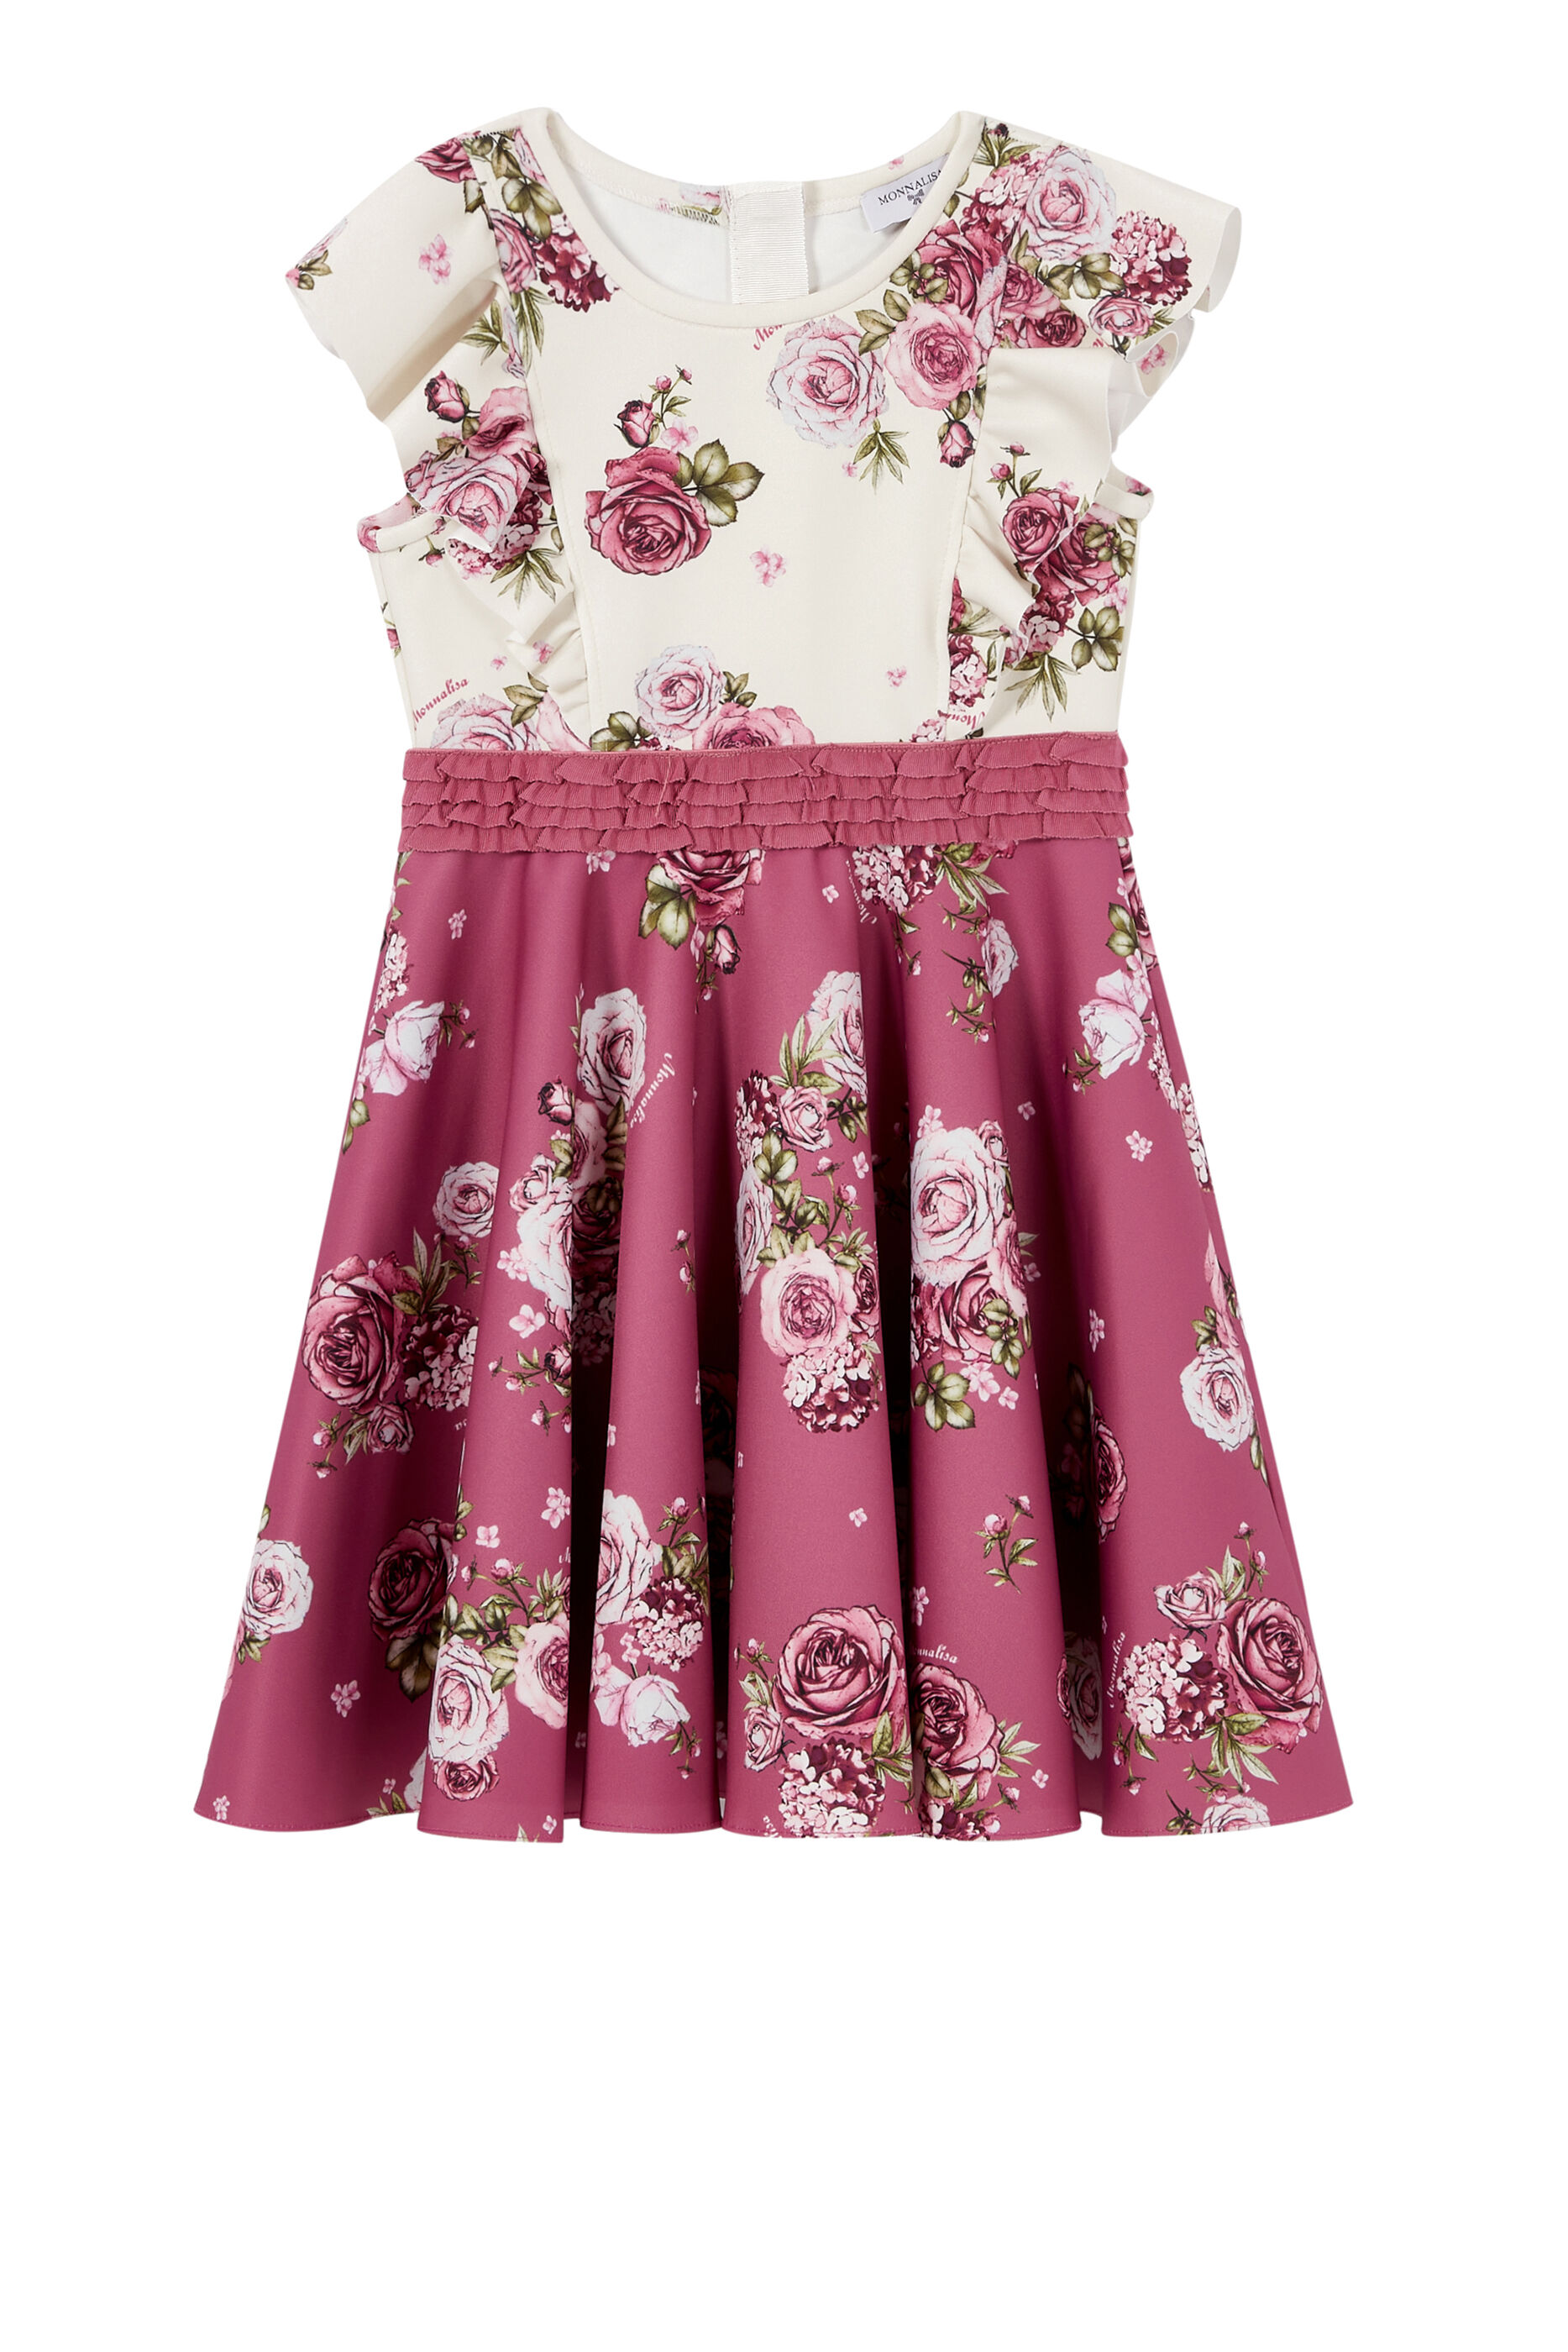 bloomingdales casual dresses